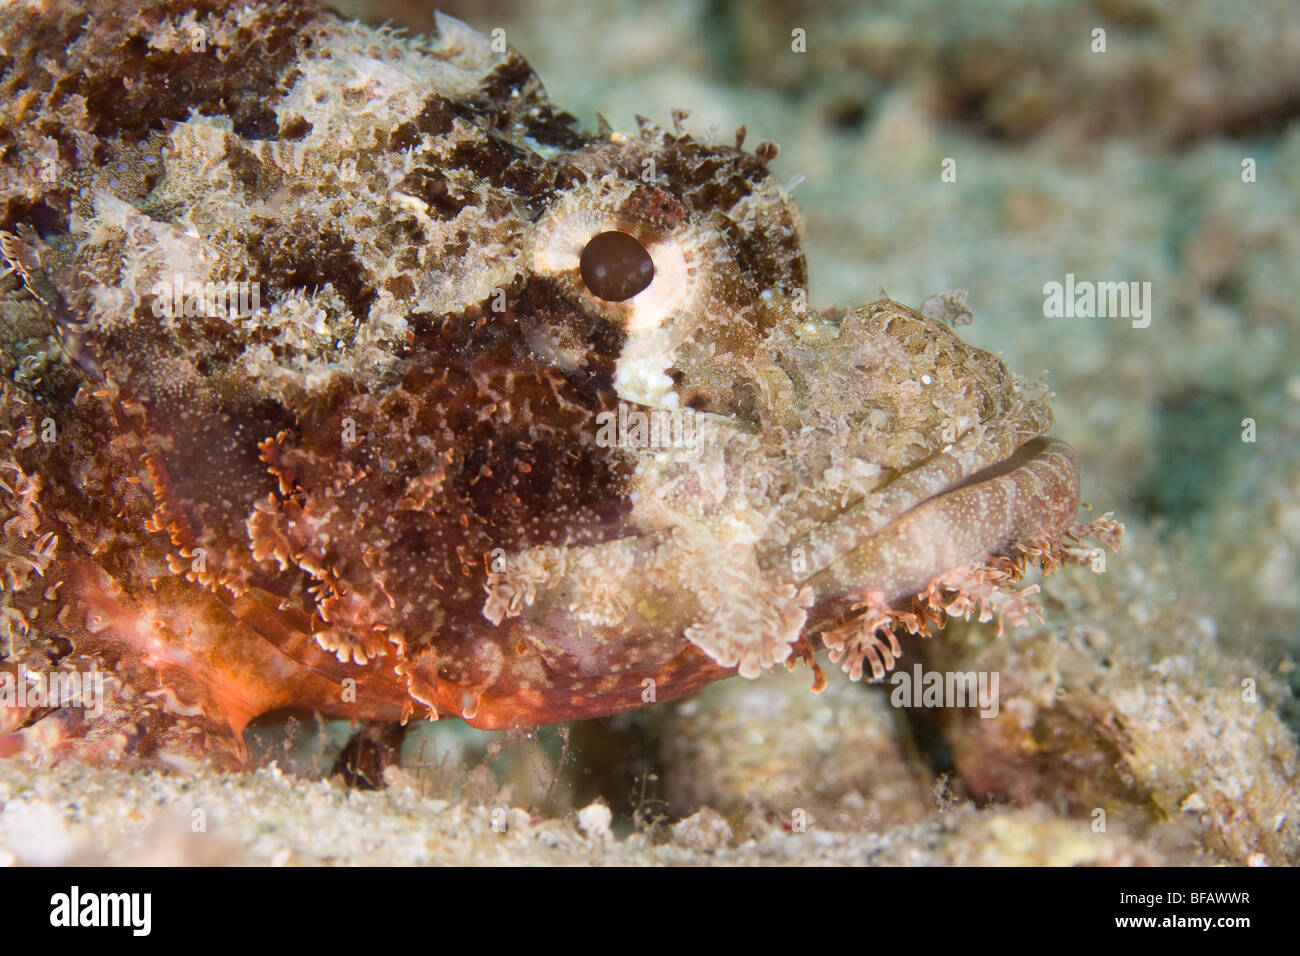 Tasseled Scorpionfish (Scorpaenopsis oxycephala), North Sulawesi, Indonesia Stock Photo